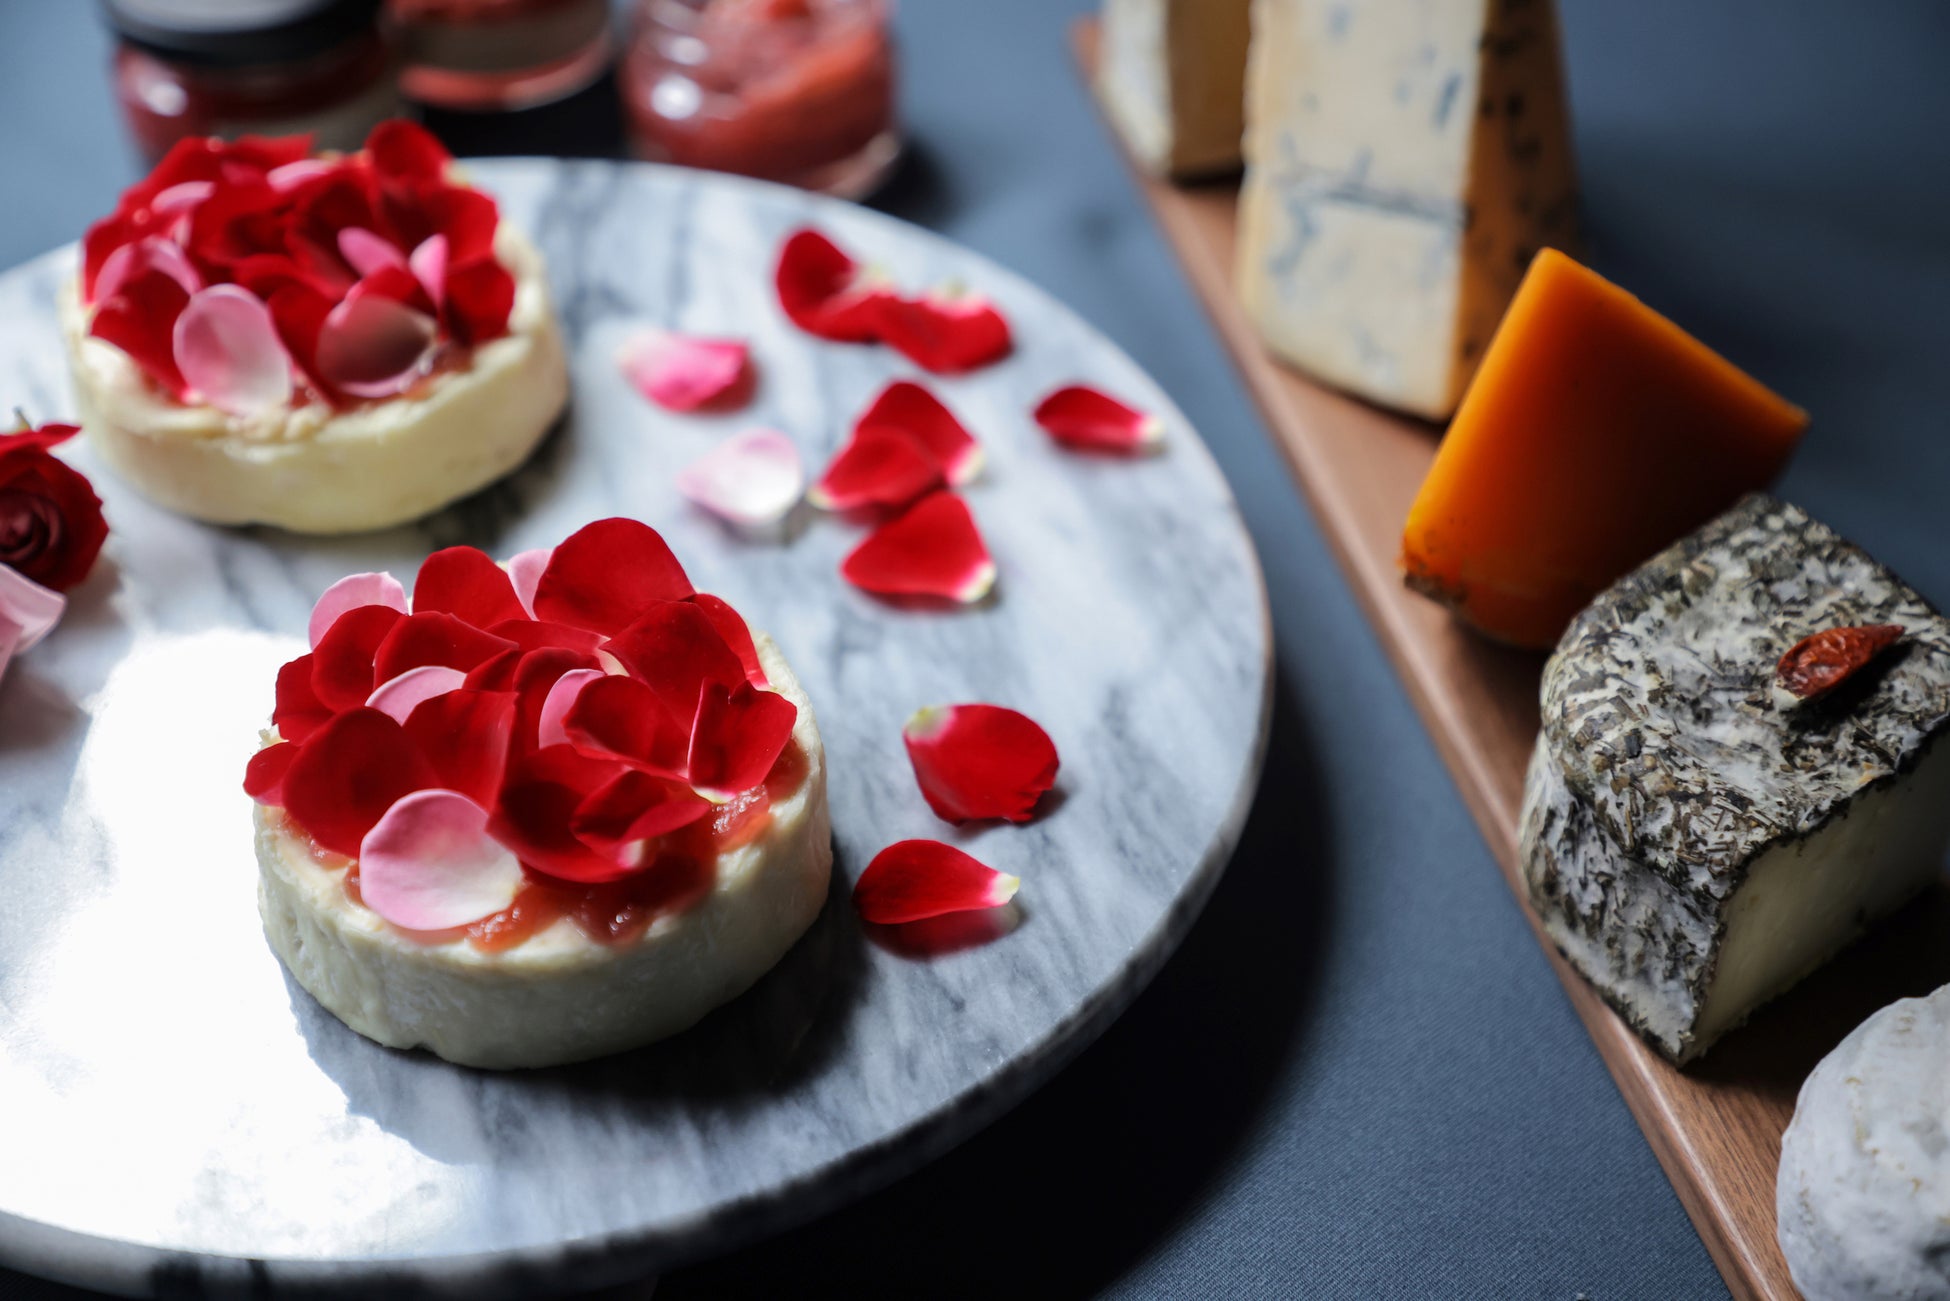 「熟成士の美味しいチーズ」をオーダーカット販売しているLAMMAS六本木ヒルズ店、開店1周年を記念して「薔薇とチーズのマリアージュ」が愉しめる『ROSE CHEESE』を販売。